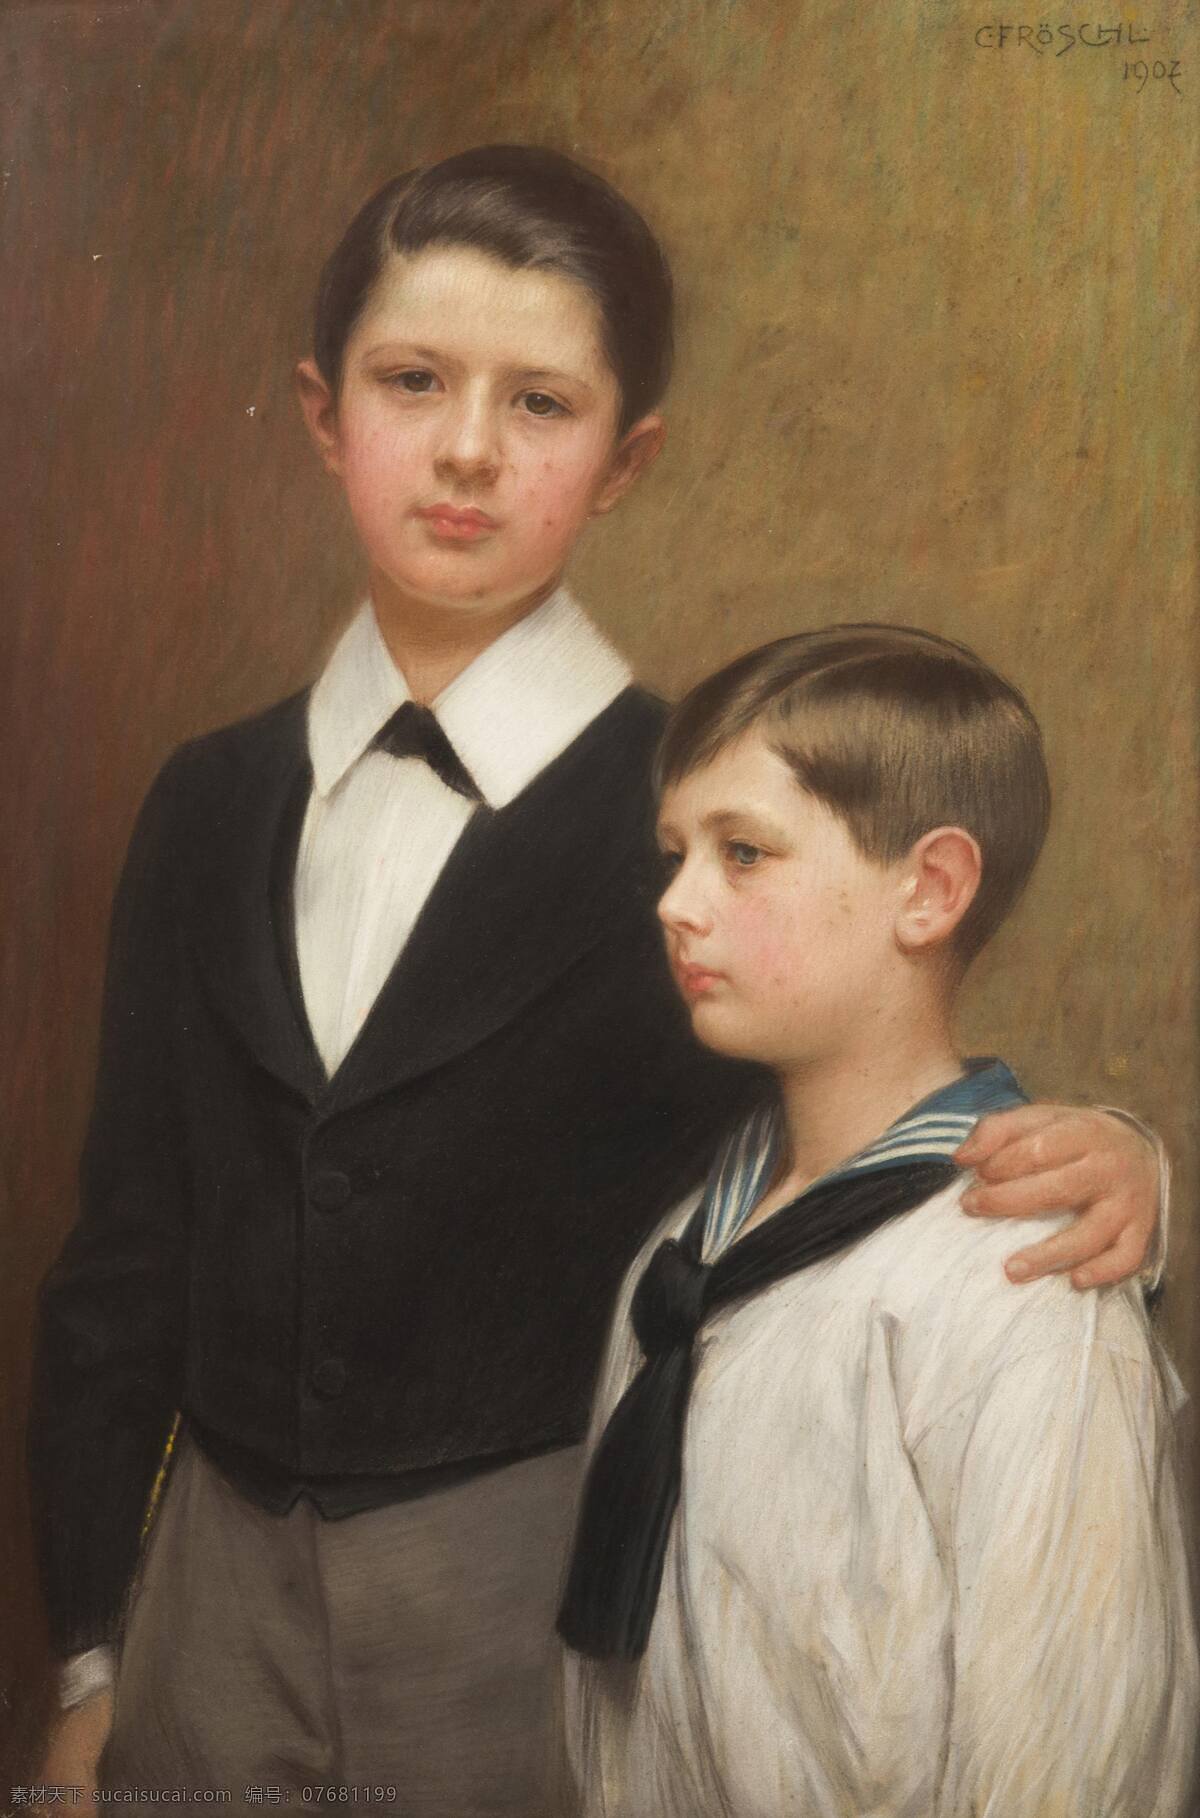 两个男孩儿 贵族之家 兄弟 手足情深 人物画像 19世纪油画 油画 文化艺术 绘画书法